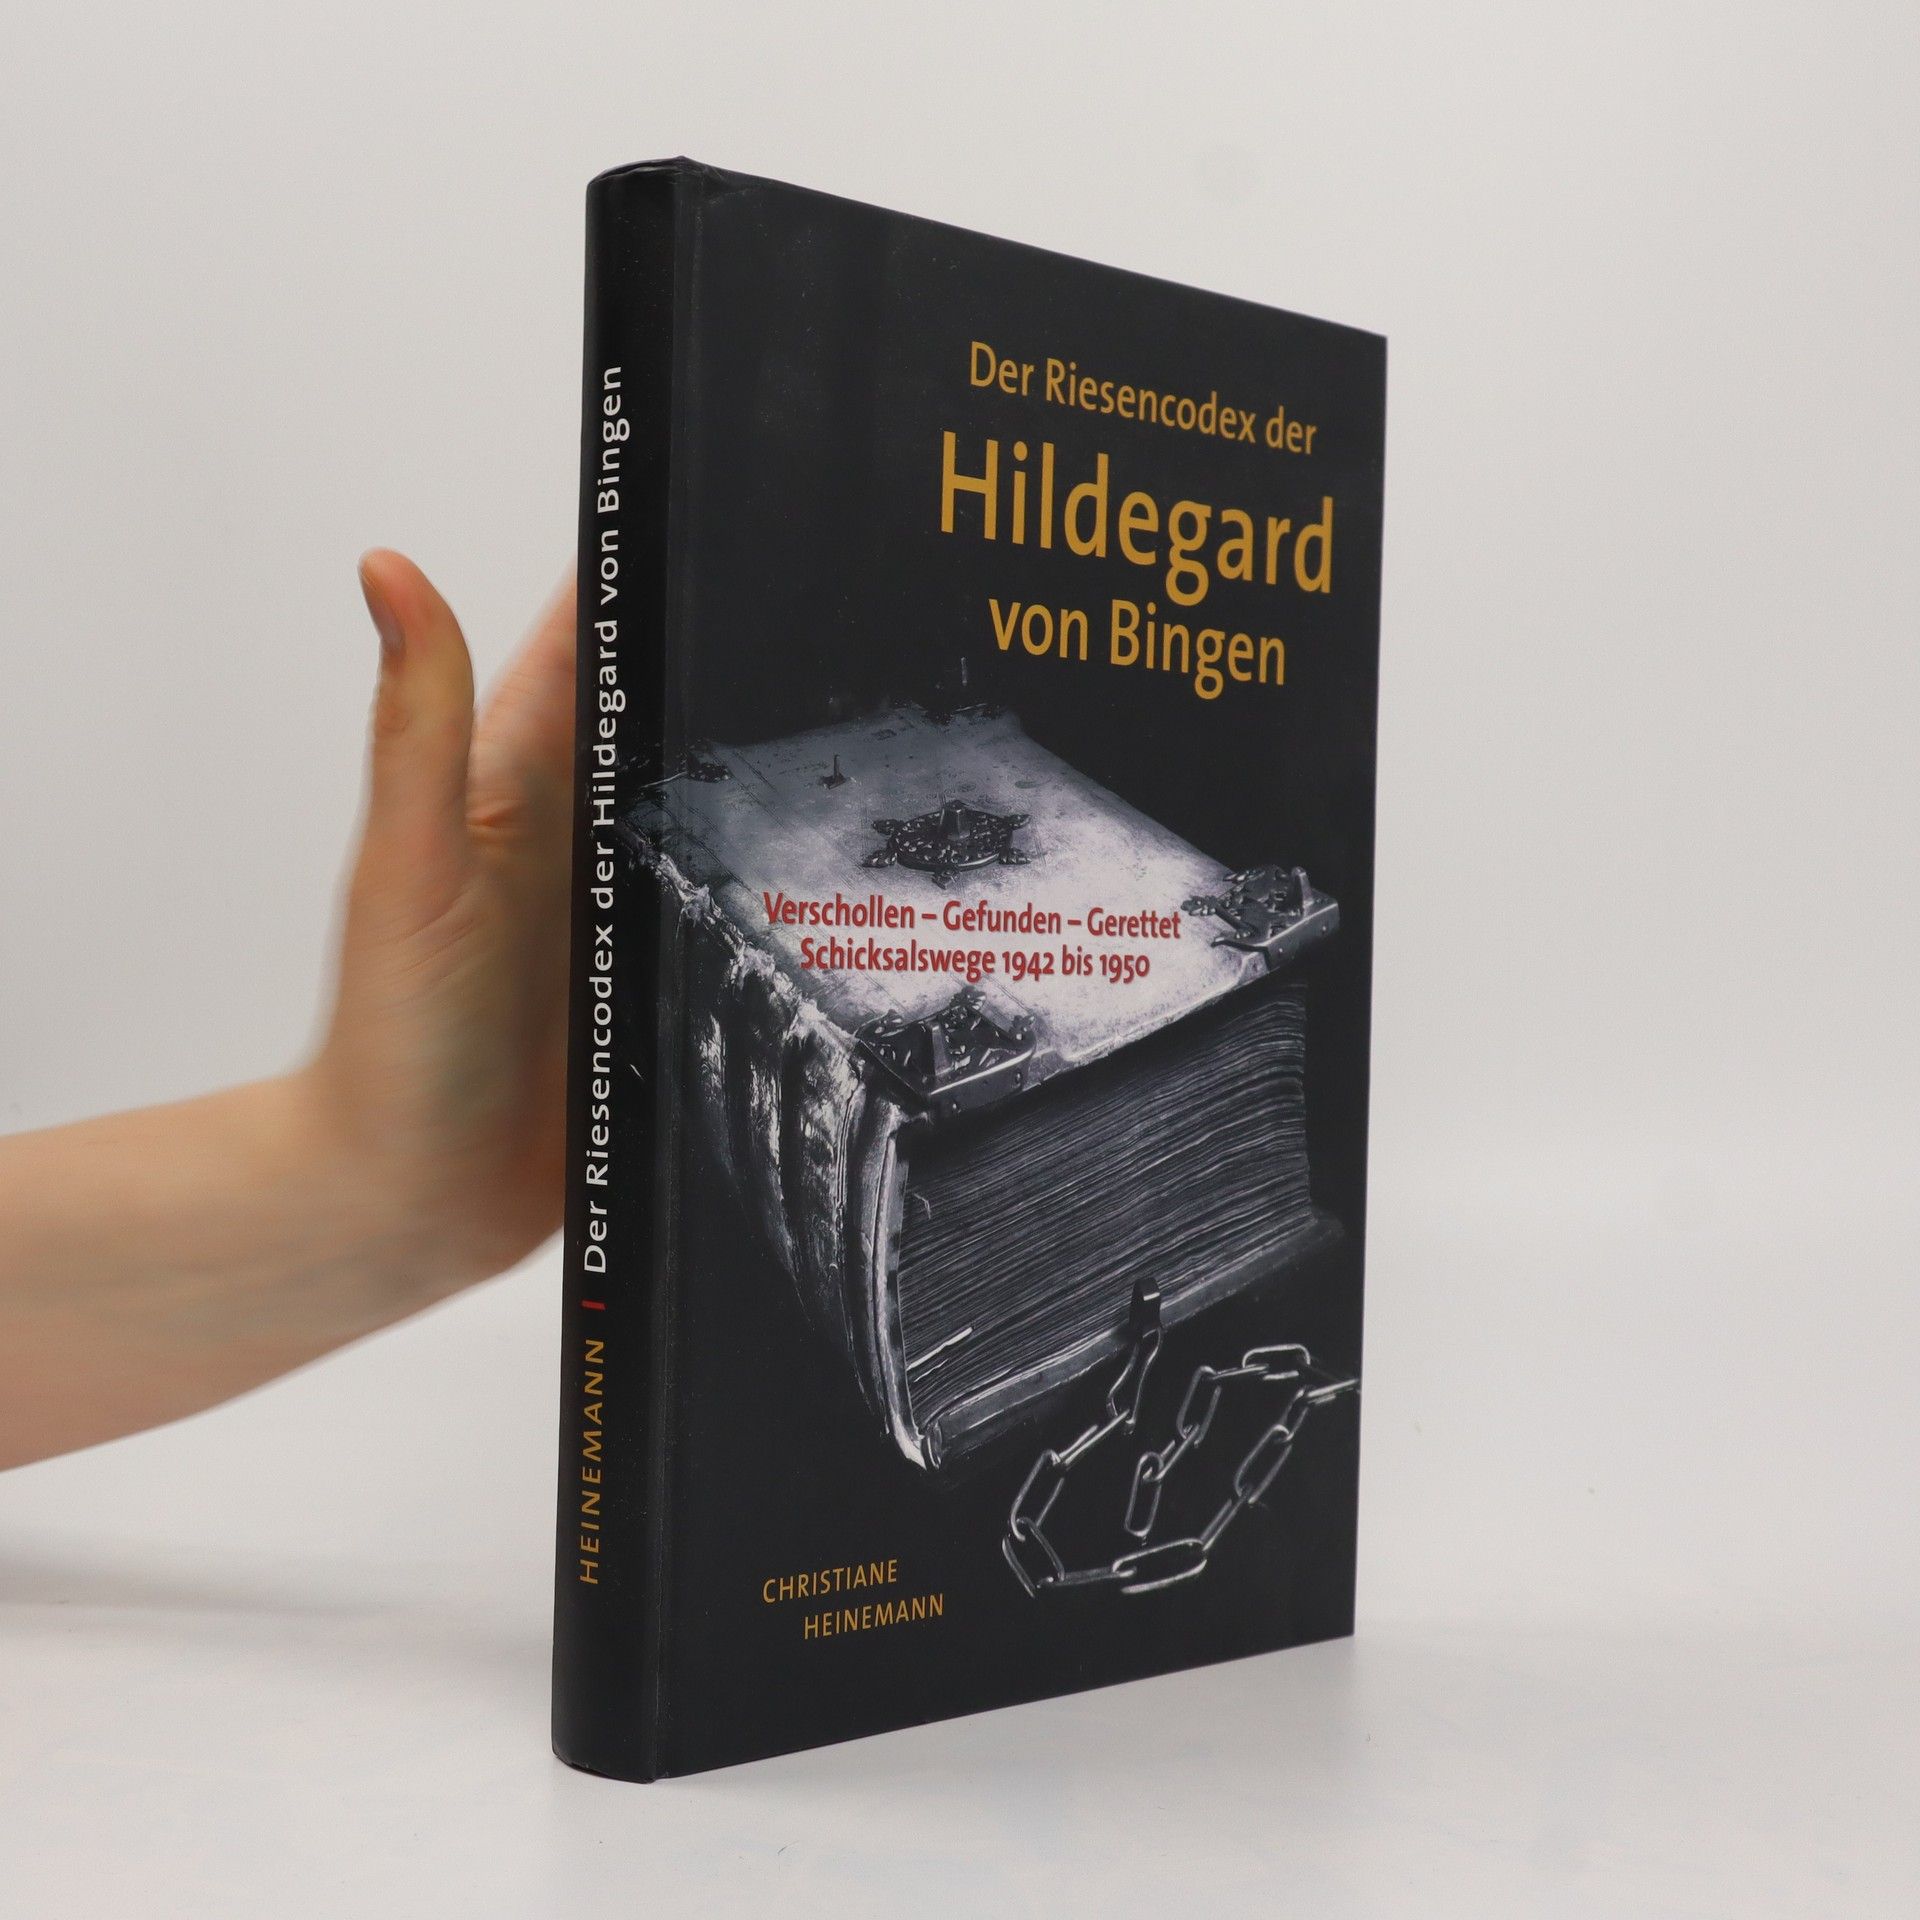 Der Riesencodex der Hildegard von Bingen - Christiane Heinemann